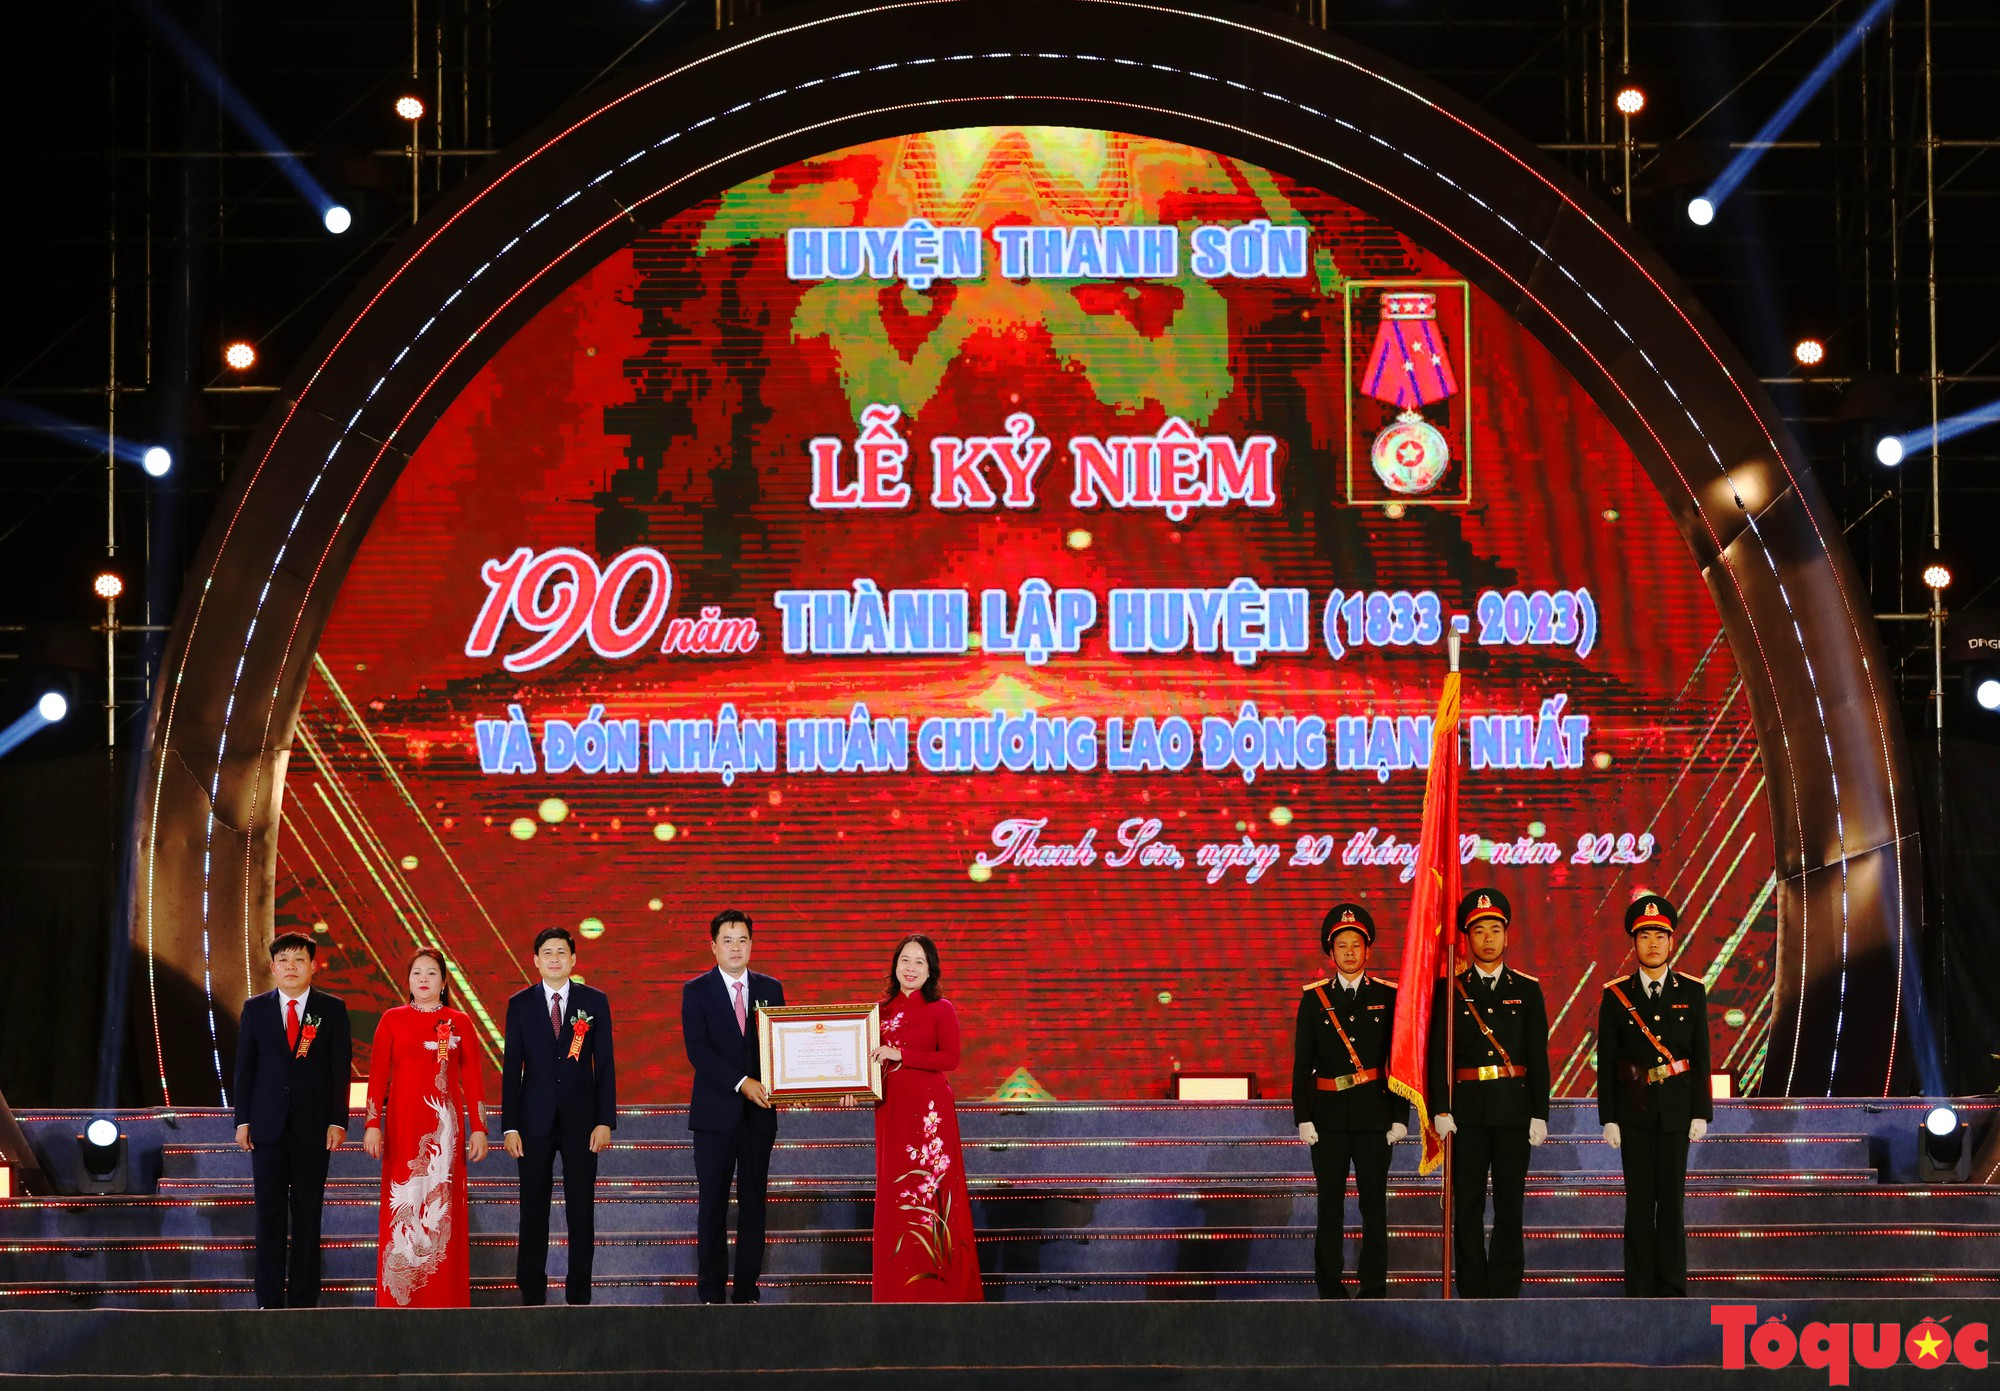 Phú Thọ kỷ niệm 190 năm thành lập huyện Thanh Sơn - Ảnh 4.